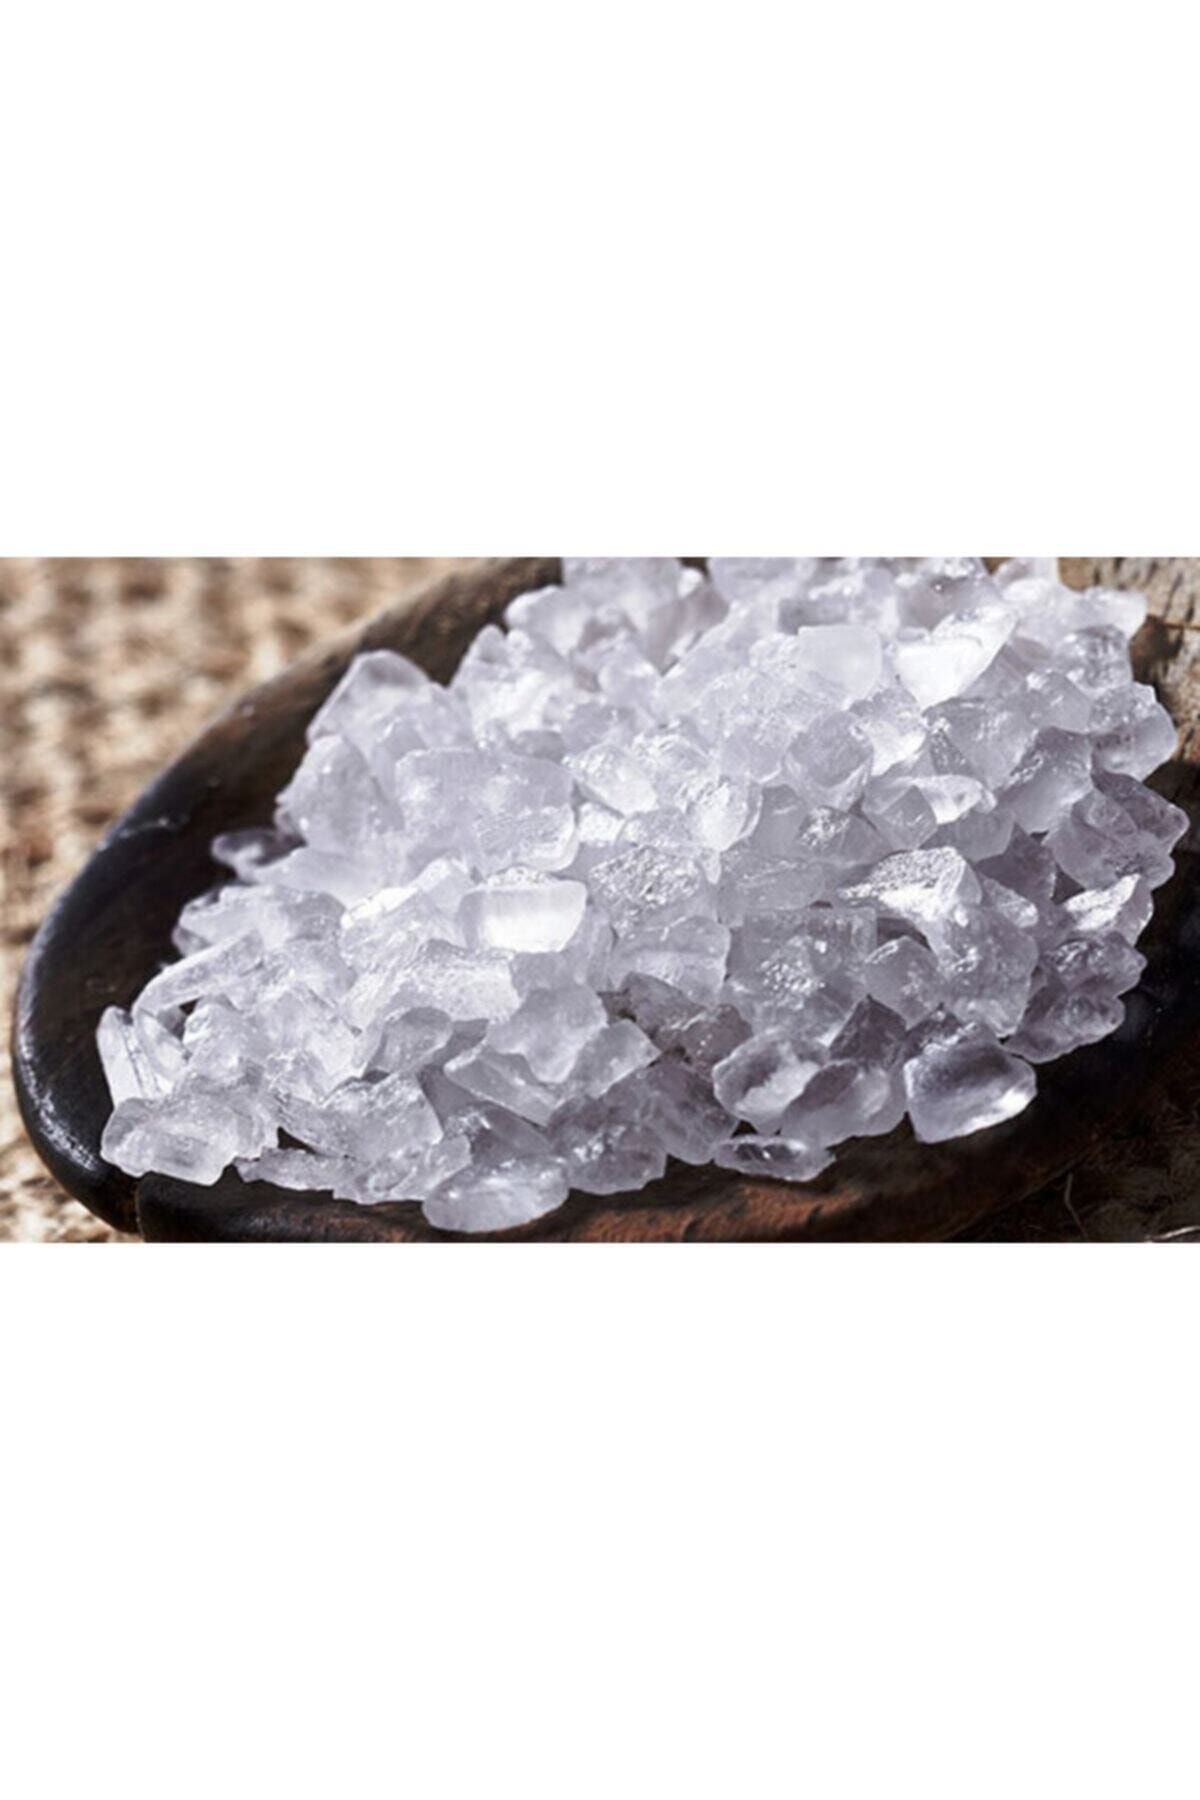 Природная минеральная соль. Поваренная соль Кристалл. Кристаллы поваренной соли. Кристаллы соли в природе. Кристаллы поваренной соли в природе.